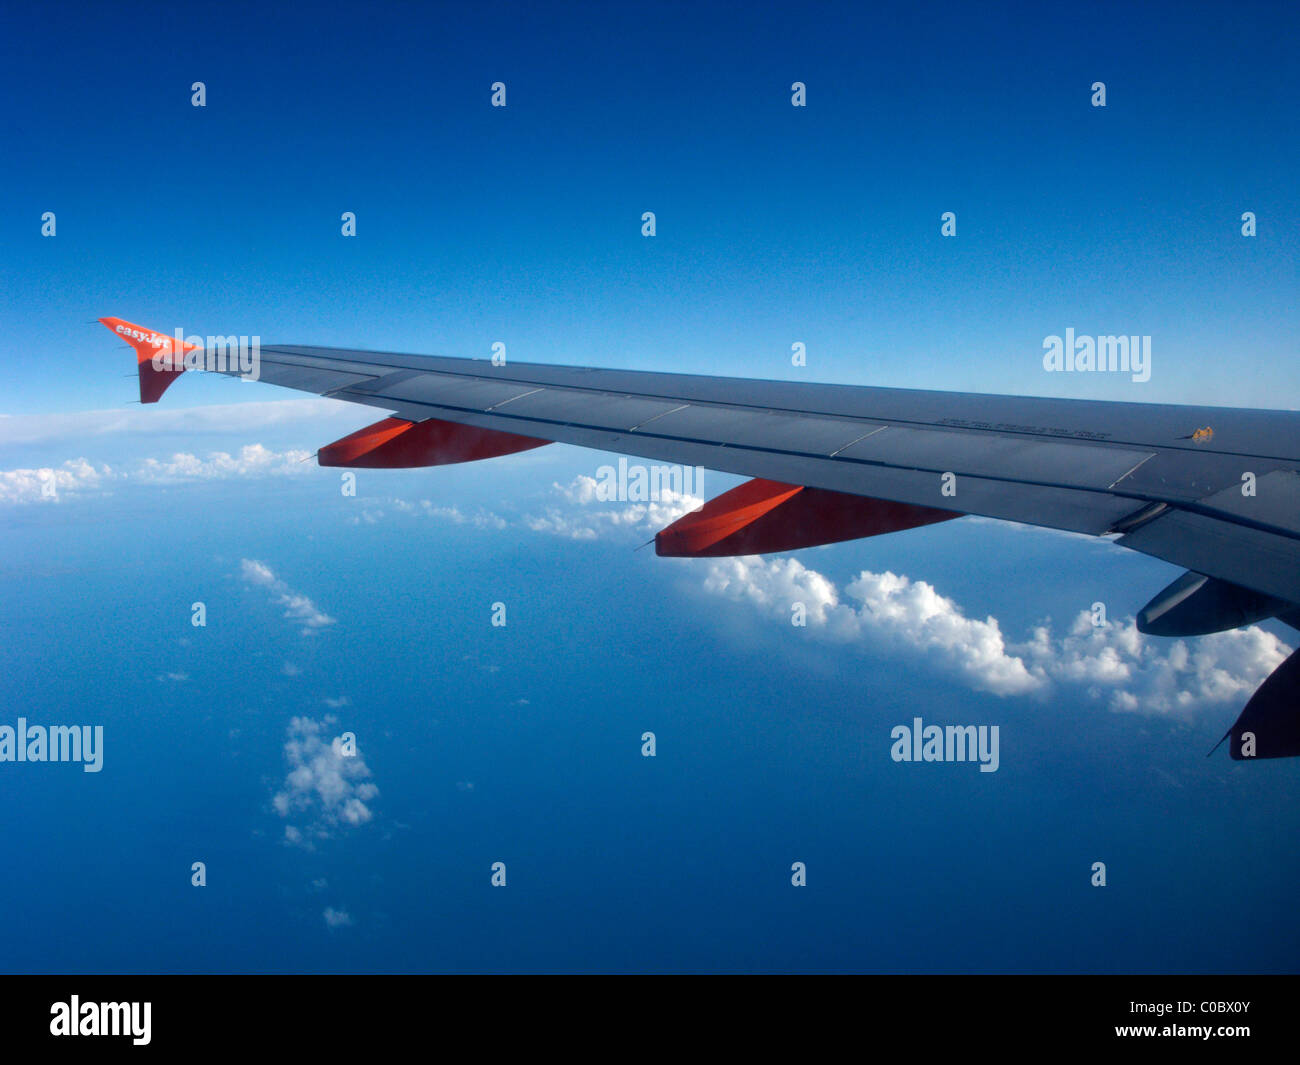 Aviones Airbus A319 de Easyjet mirando a través de la aeronave de ala ventana mostrando los alerones flaps y trampilla vía carenados Foto de stock